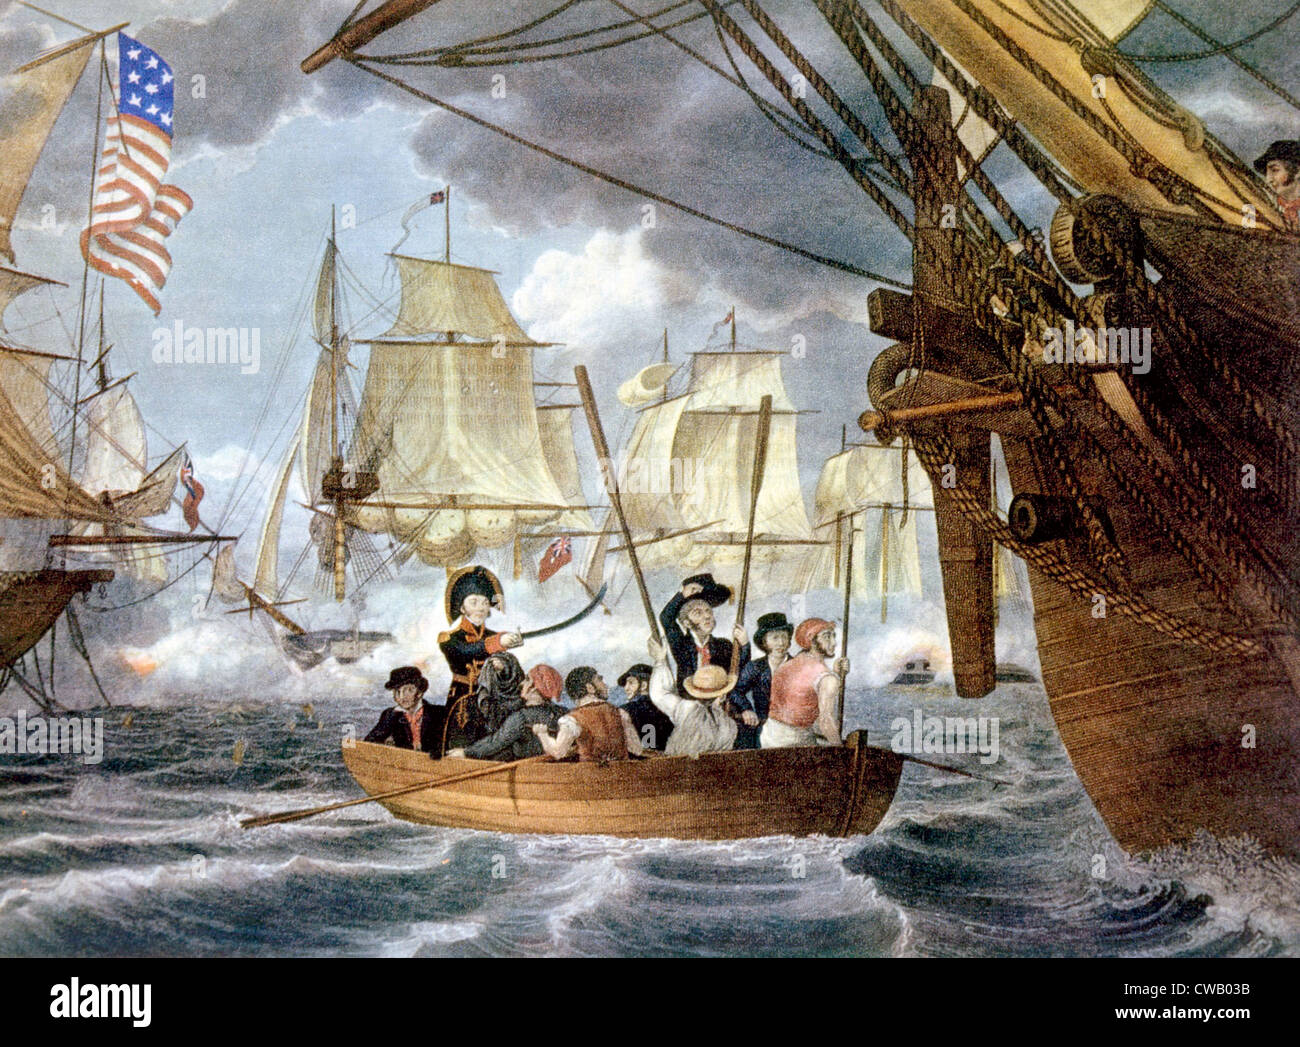 La batalla del lago Erie, Comodoro Perry transfiriendo su bandera del Lawrence al Niágara, 1813 Foto de stock